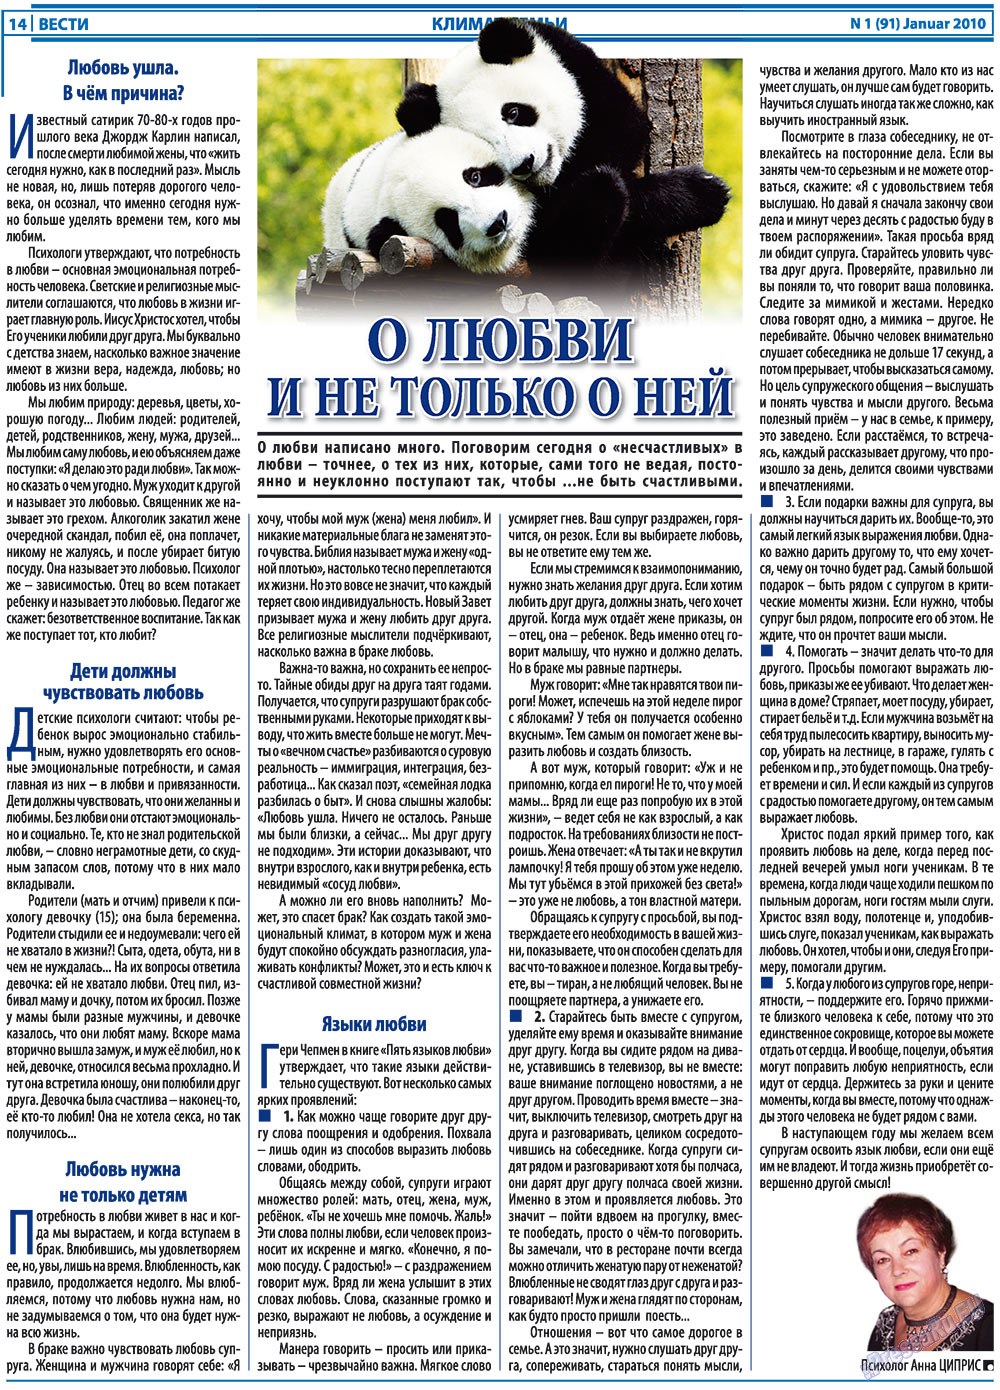 Вести, газета. 2010 №1 стр.14